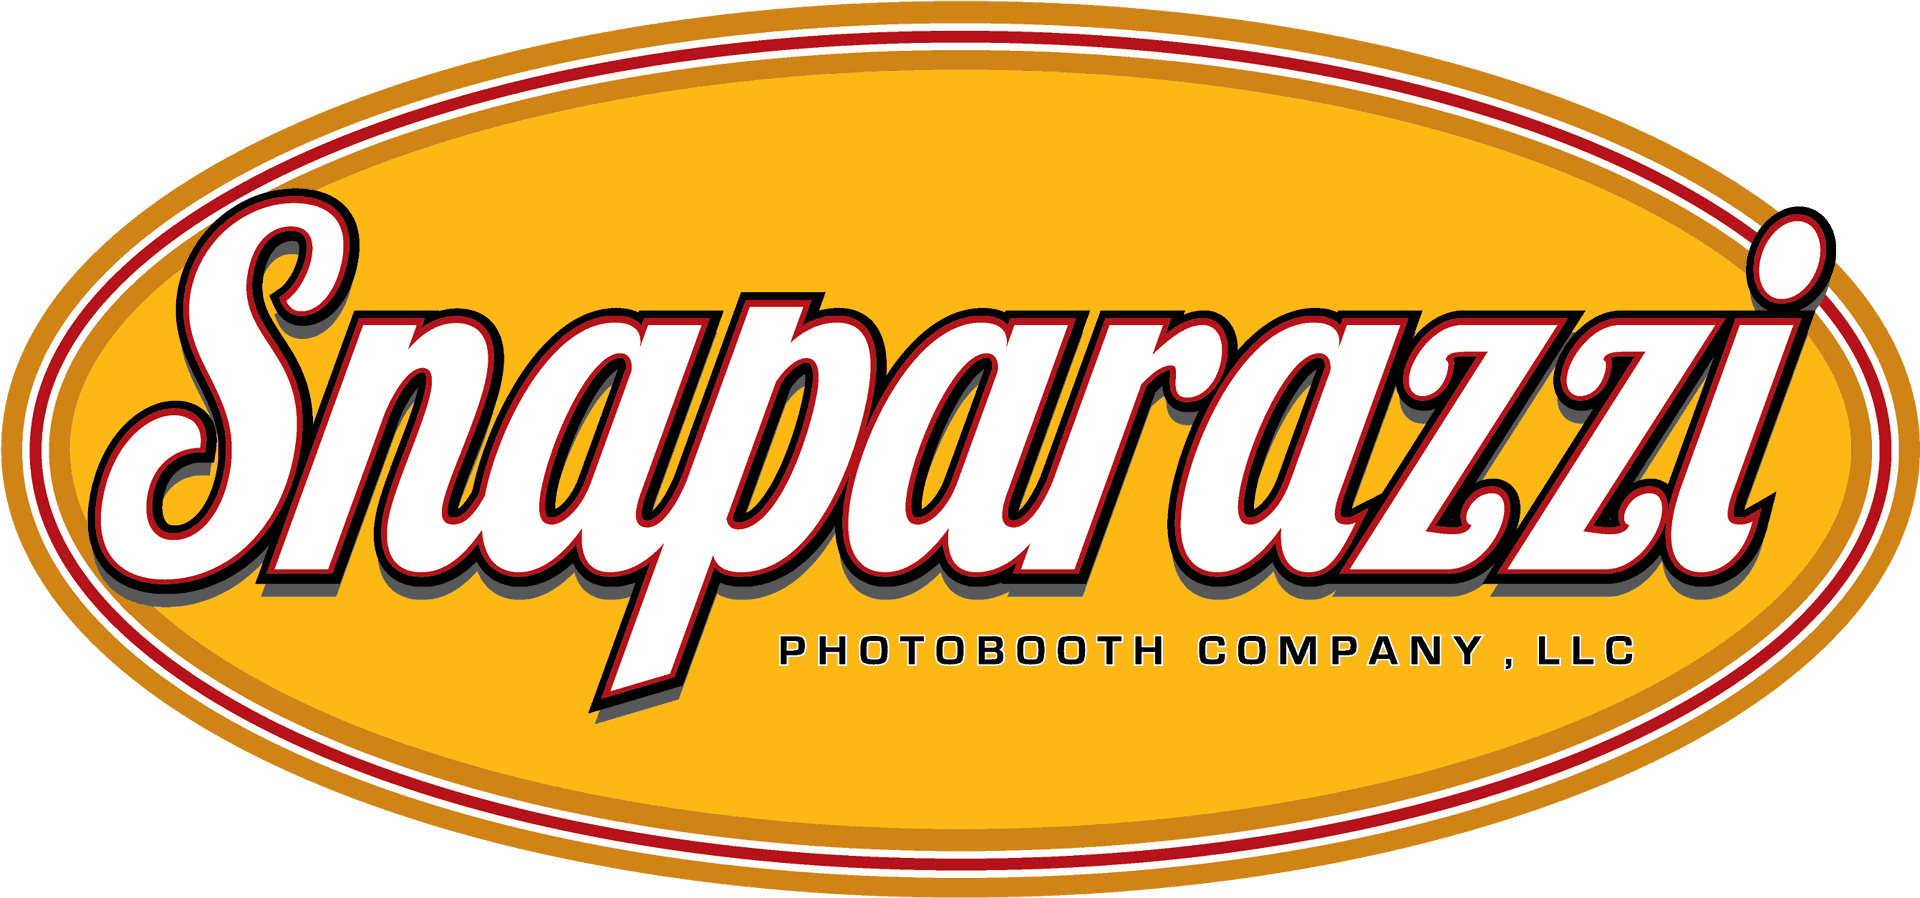 Snaparazzi Photobooth Company Logo PNG